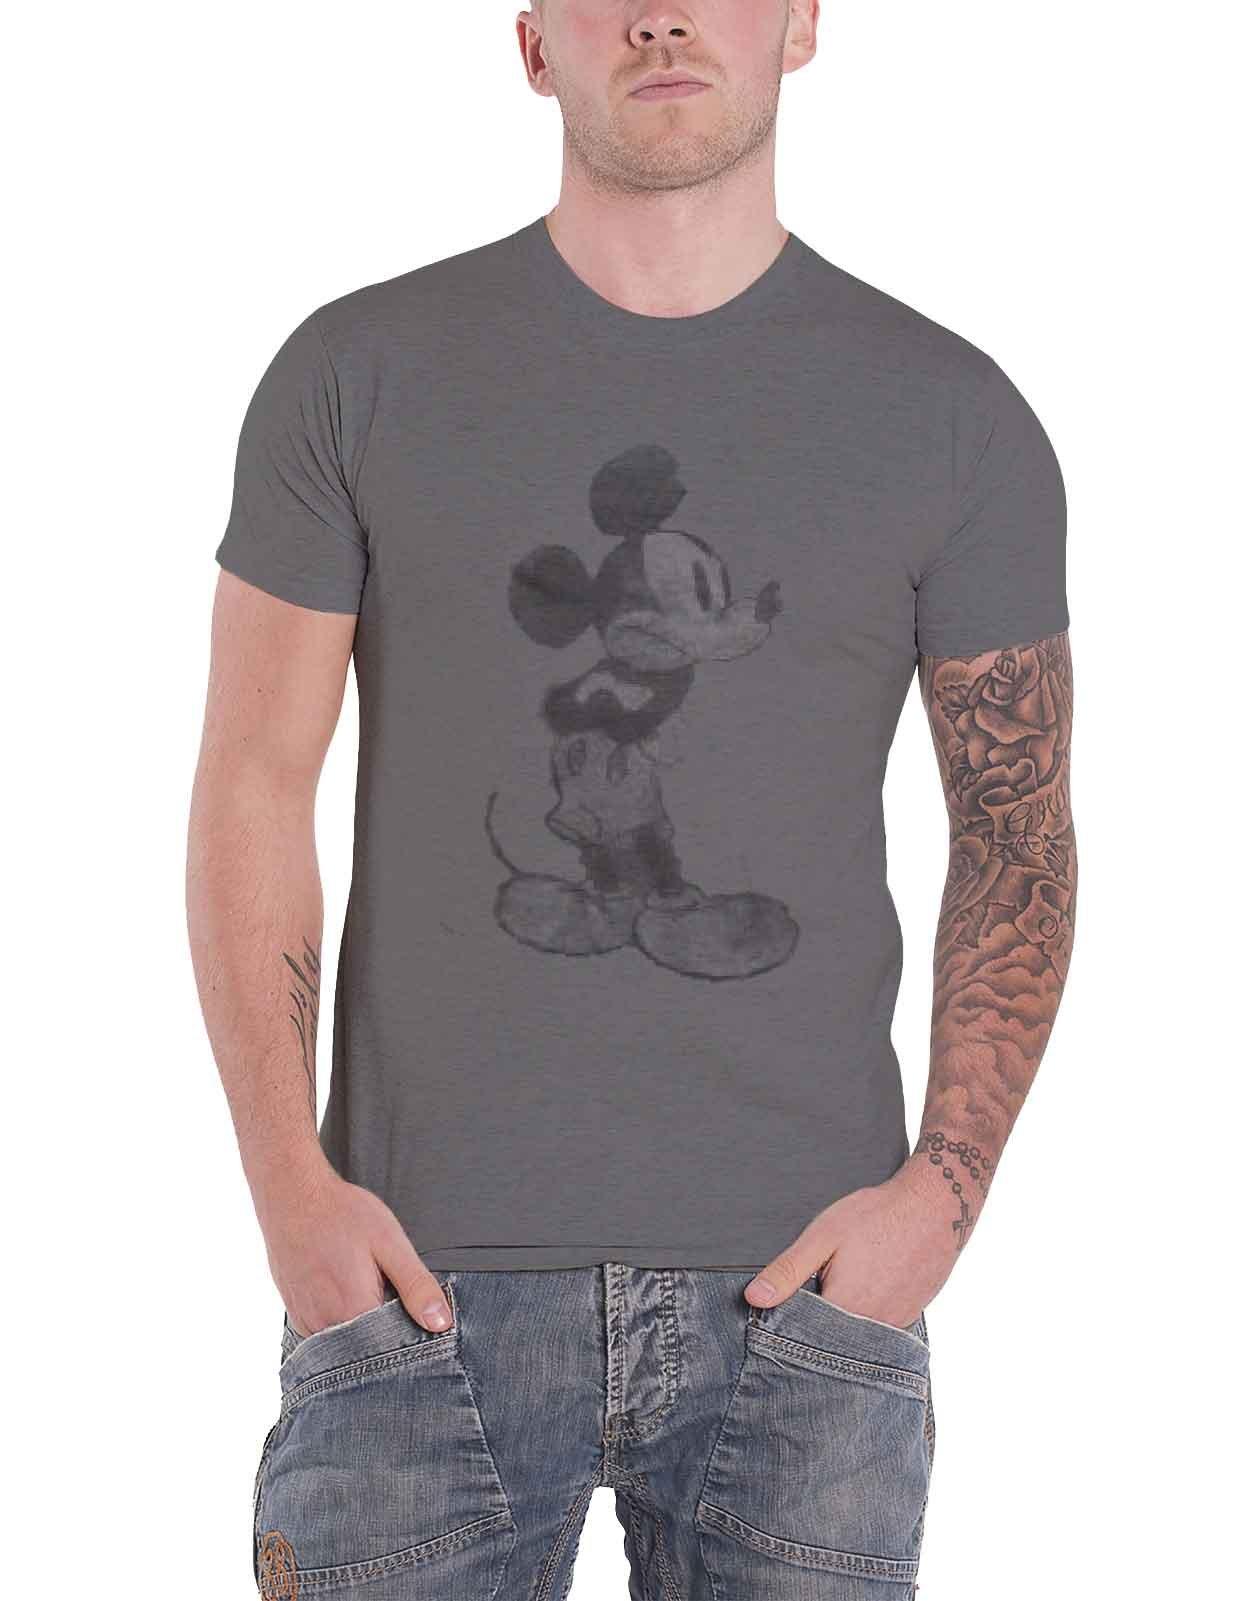 Винтажная футболка с изображением Микки Мауса Disney, серый футболка с микки маусом и граффити для мальчиков disney белый